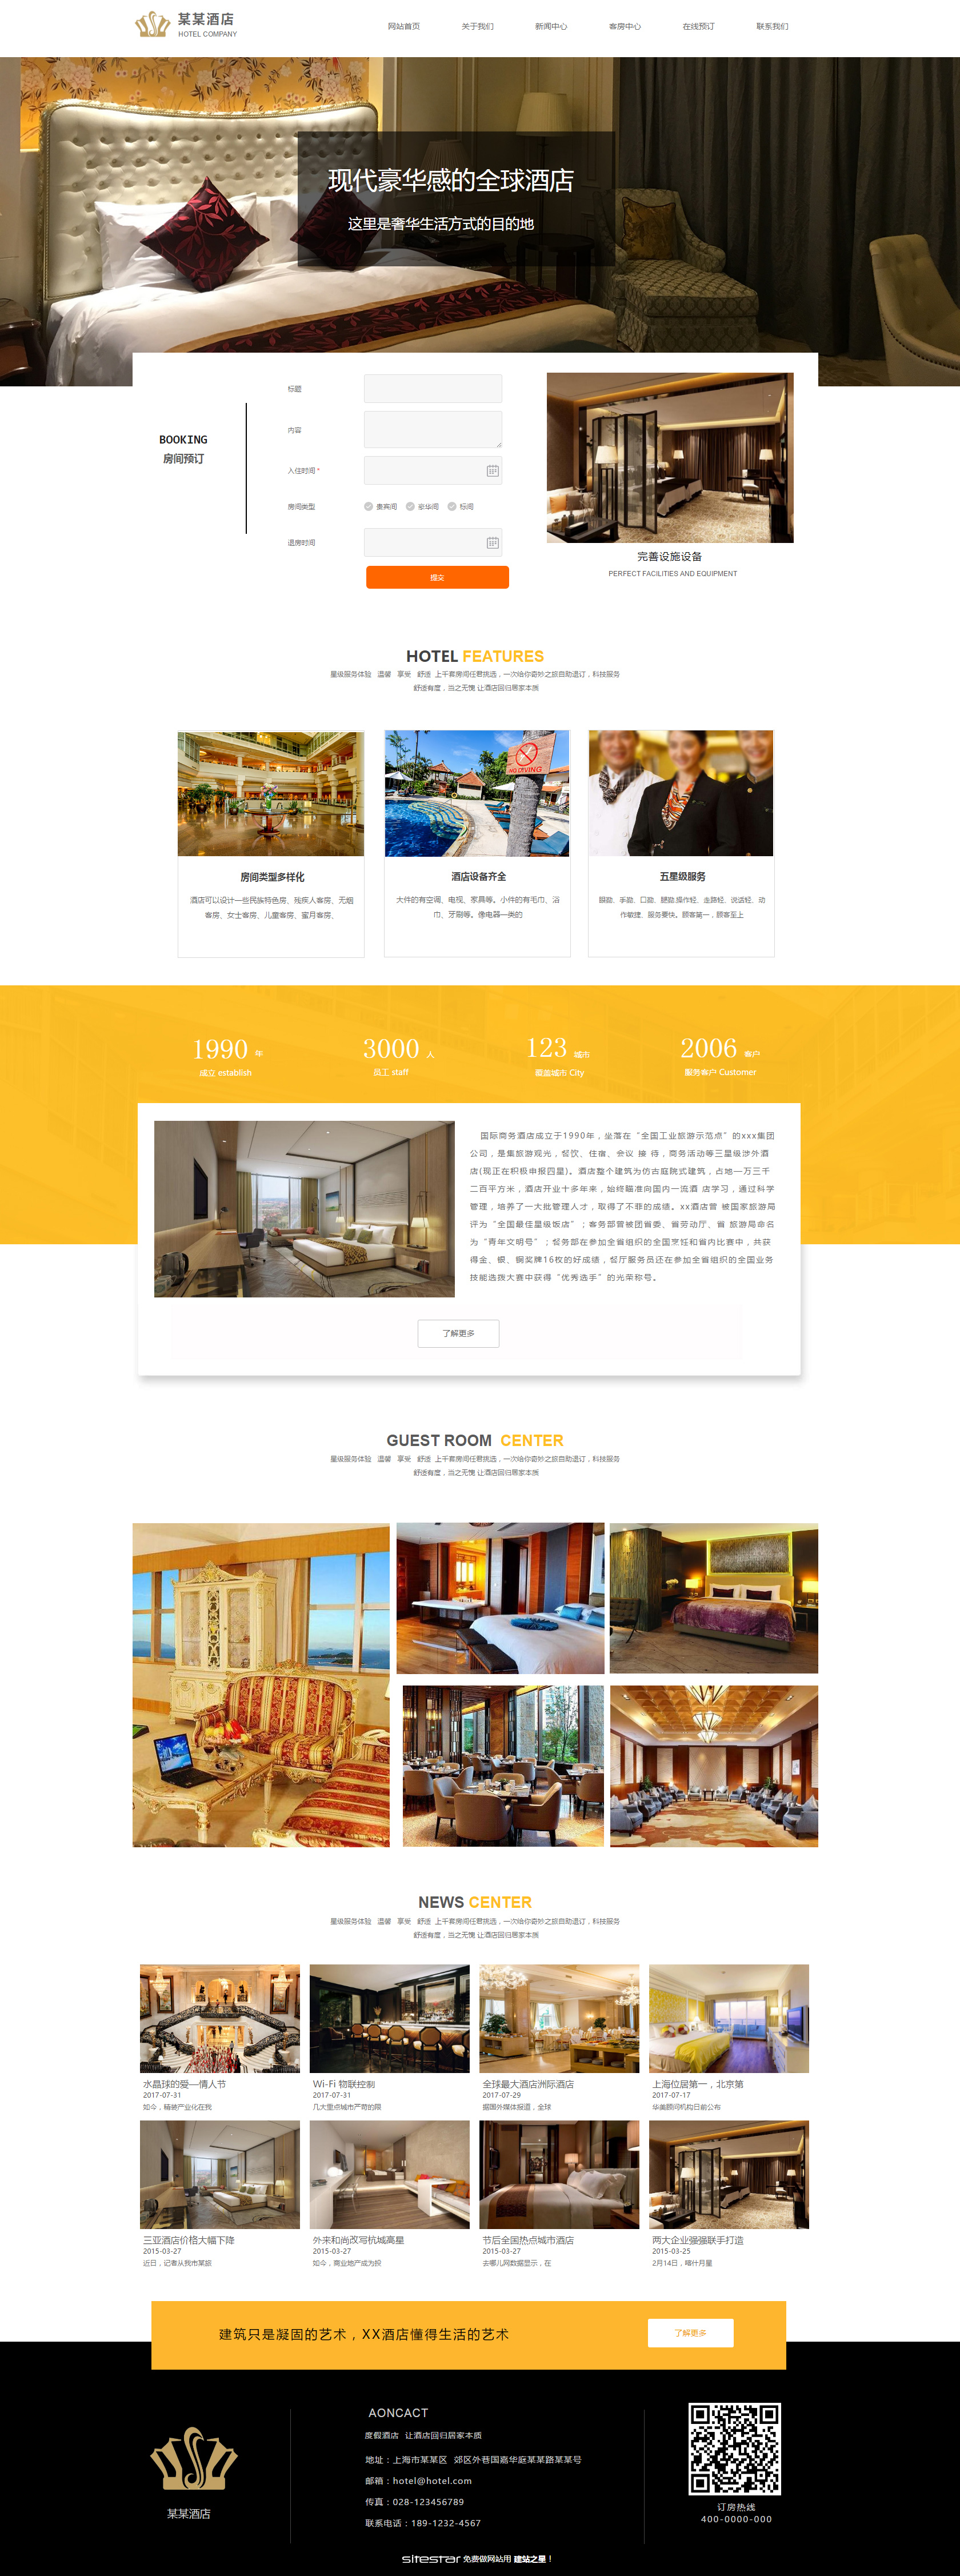 企业网站精美模板-hotels-1106592